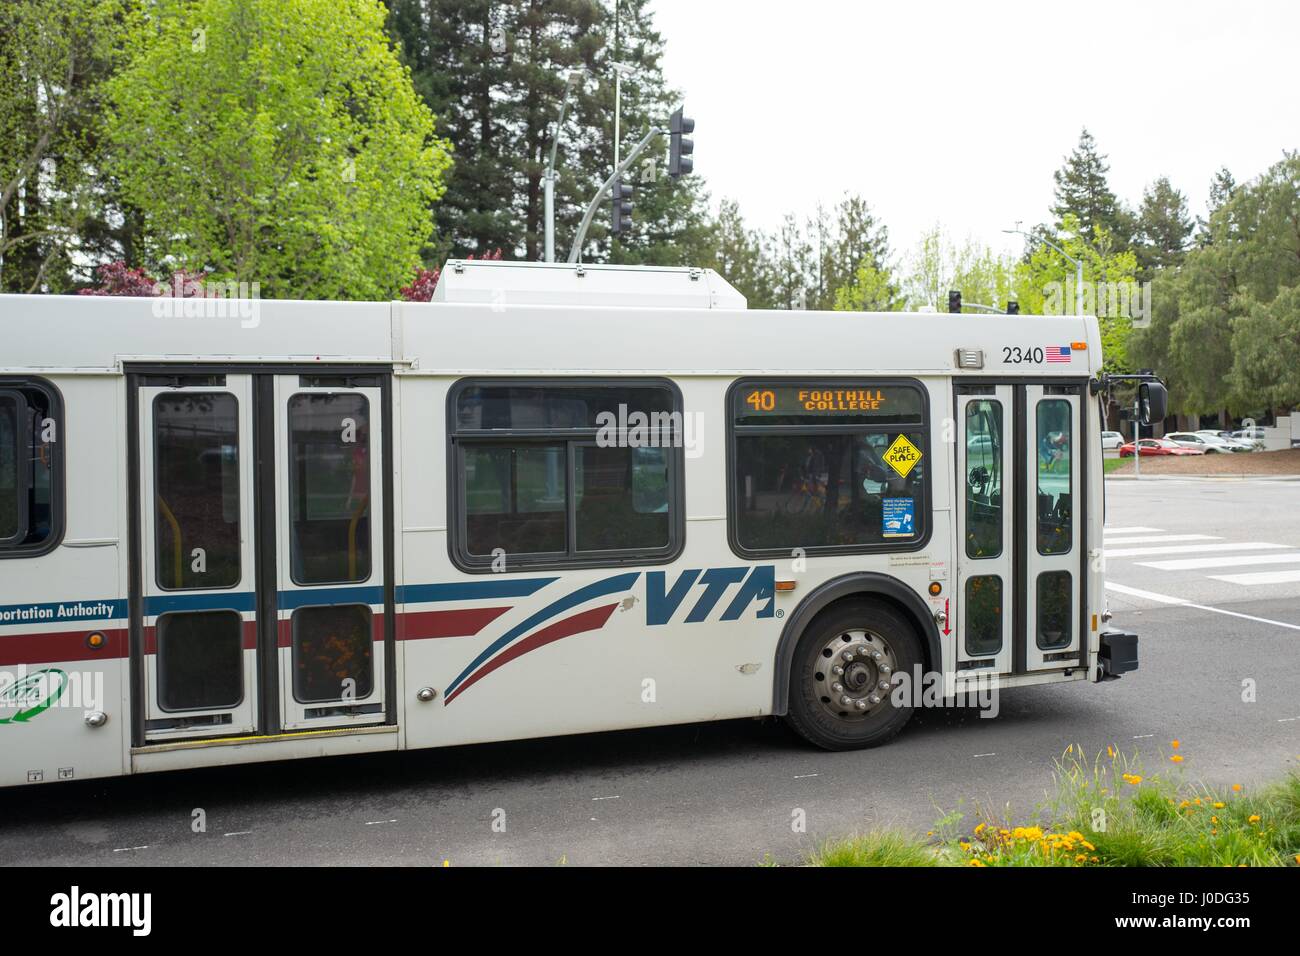 Valley Transportation Authority (VTA) bus au Googleplex, le siège de la Silicon Valley et de la technologie du moteur de recherche Google Inc, Mountain View, Californie, le 7 avril 2017. L'IDV est la principale agence de transport en commun pour la Silicon Valley. Banque D'Images